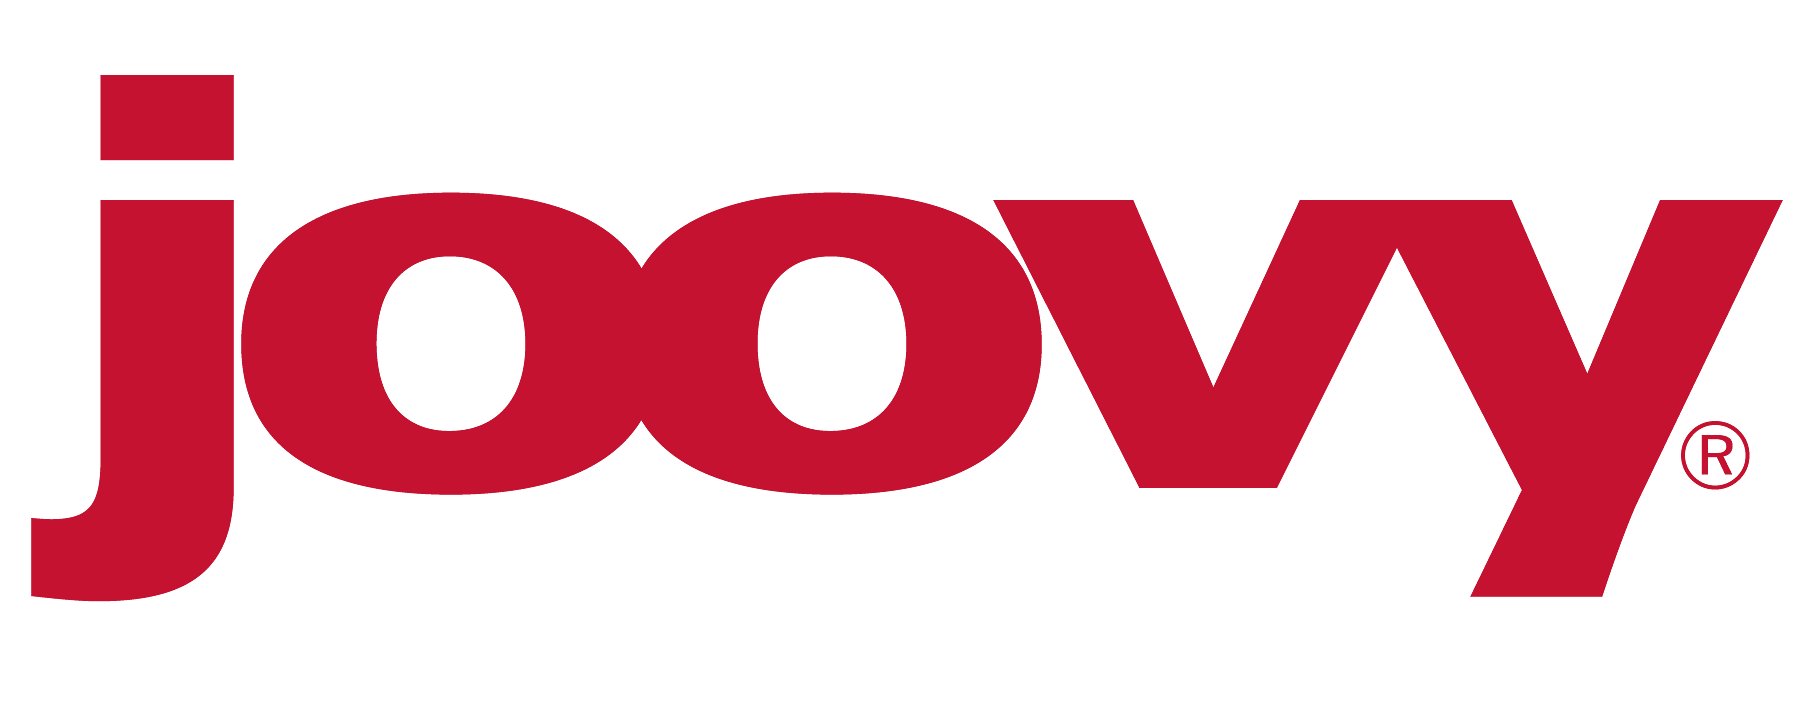 Joovy Logo